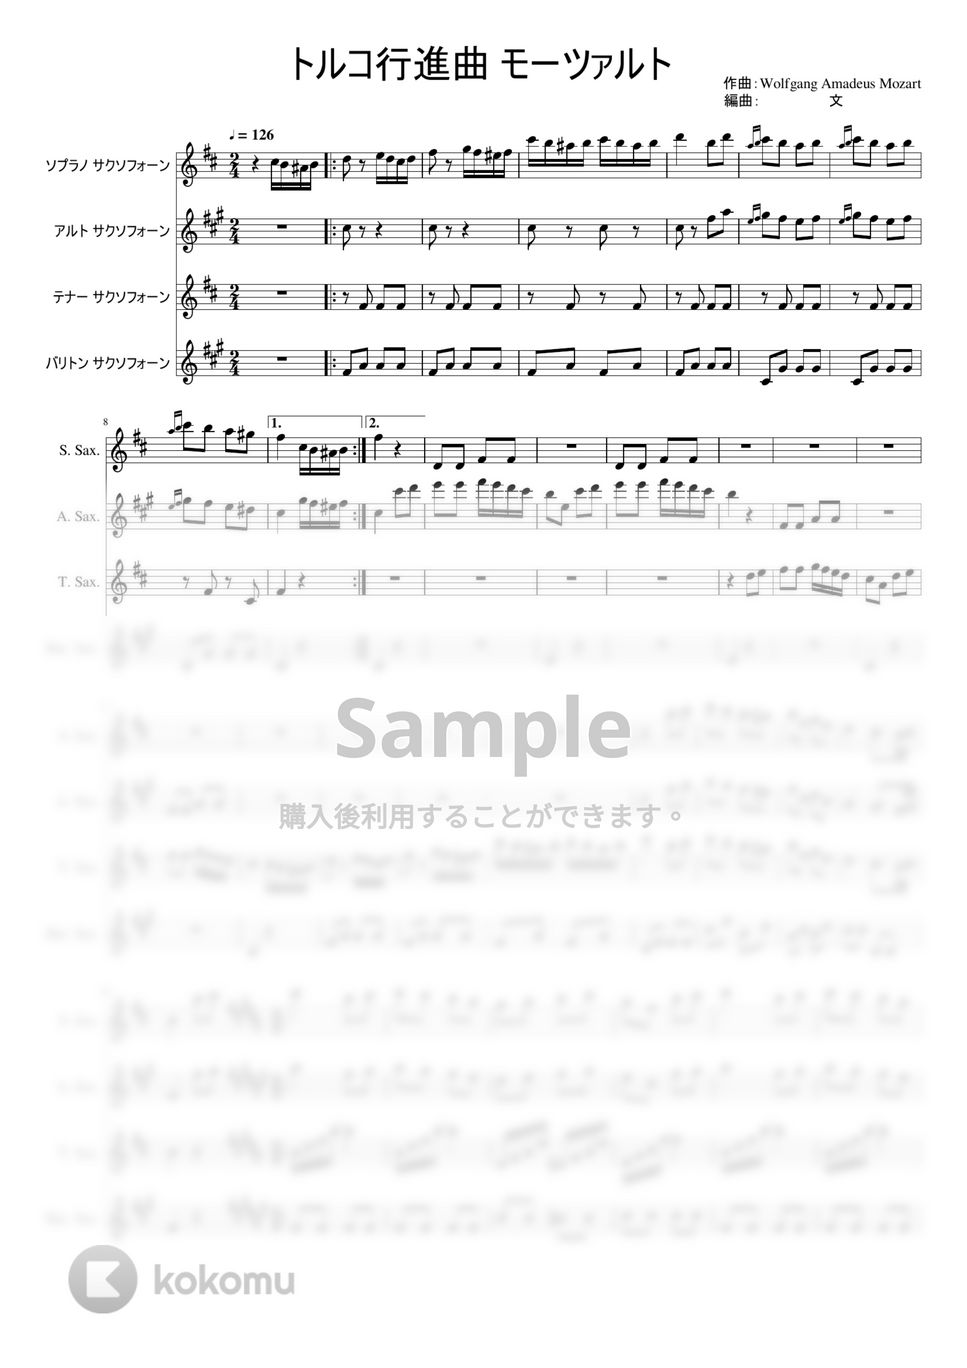 モーツァルト - トルコ行進曲 (サックス四重奏/中級) by ぶんぶんスコア